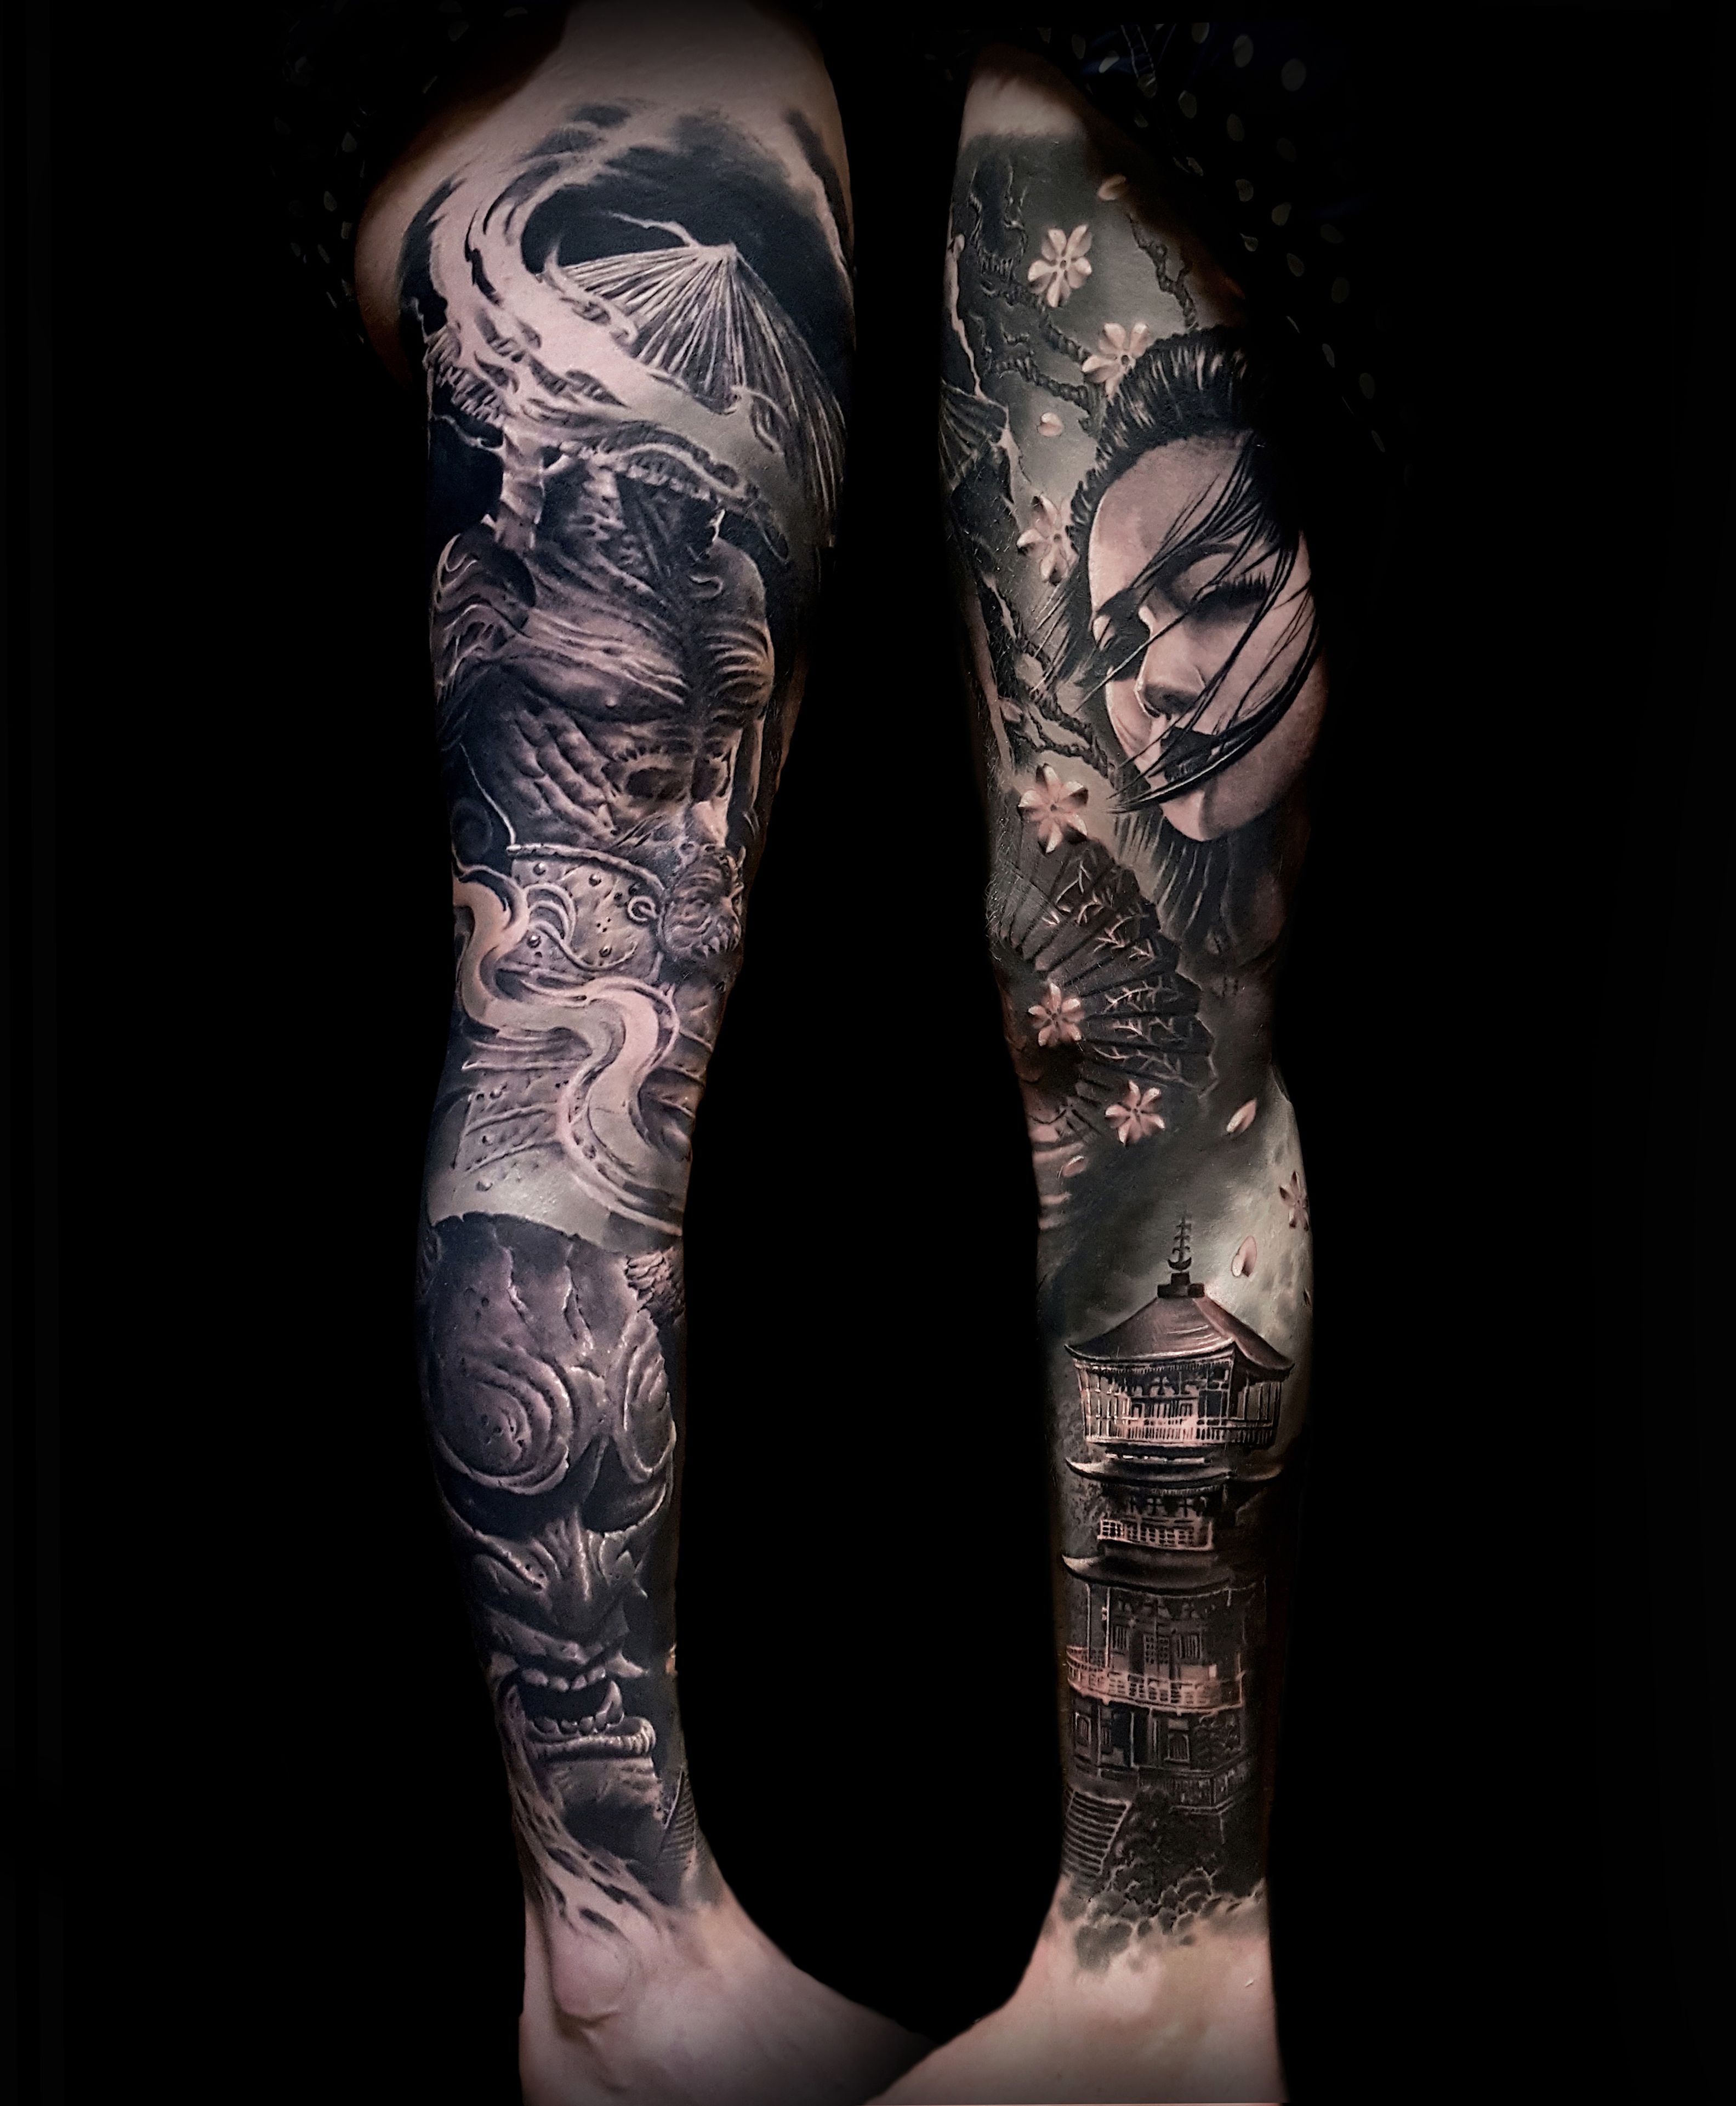 Japanese style sleeve by Matt Shiflett at Blue Rose in Huntsville AL : r/ tattoos